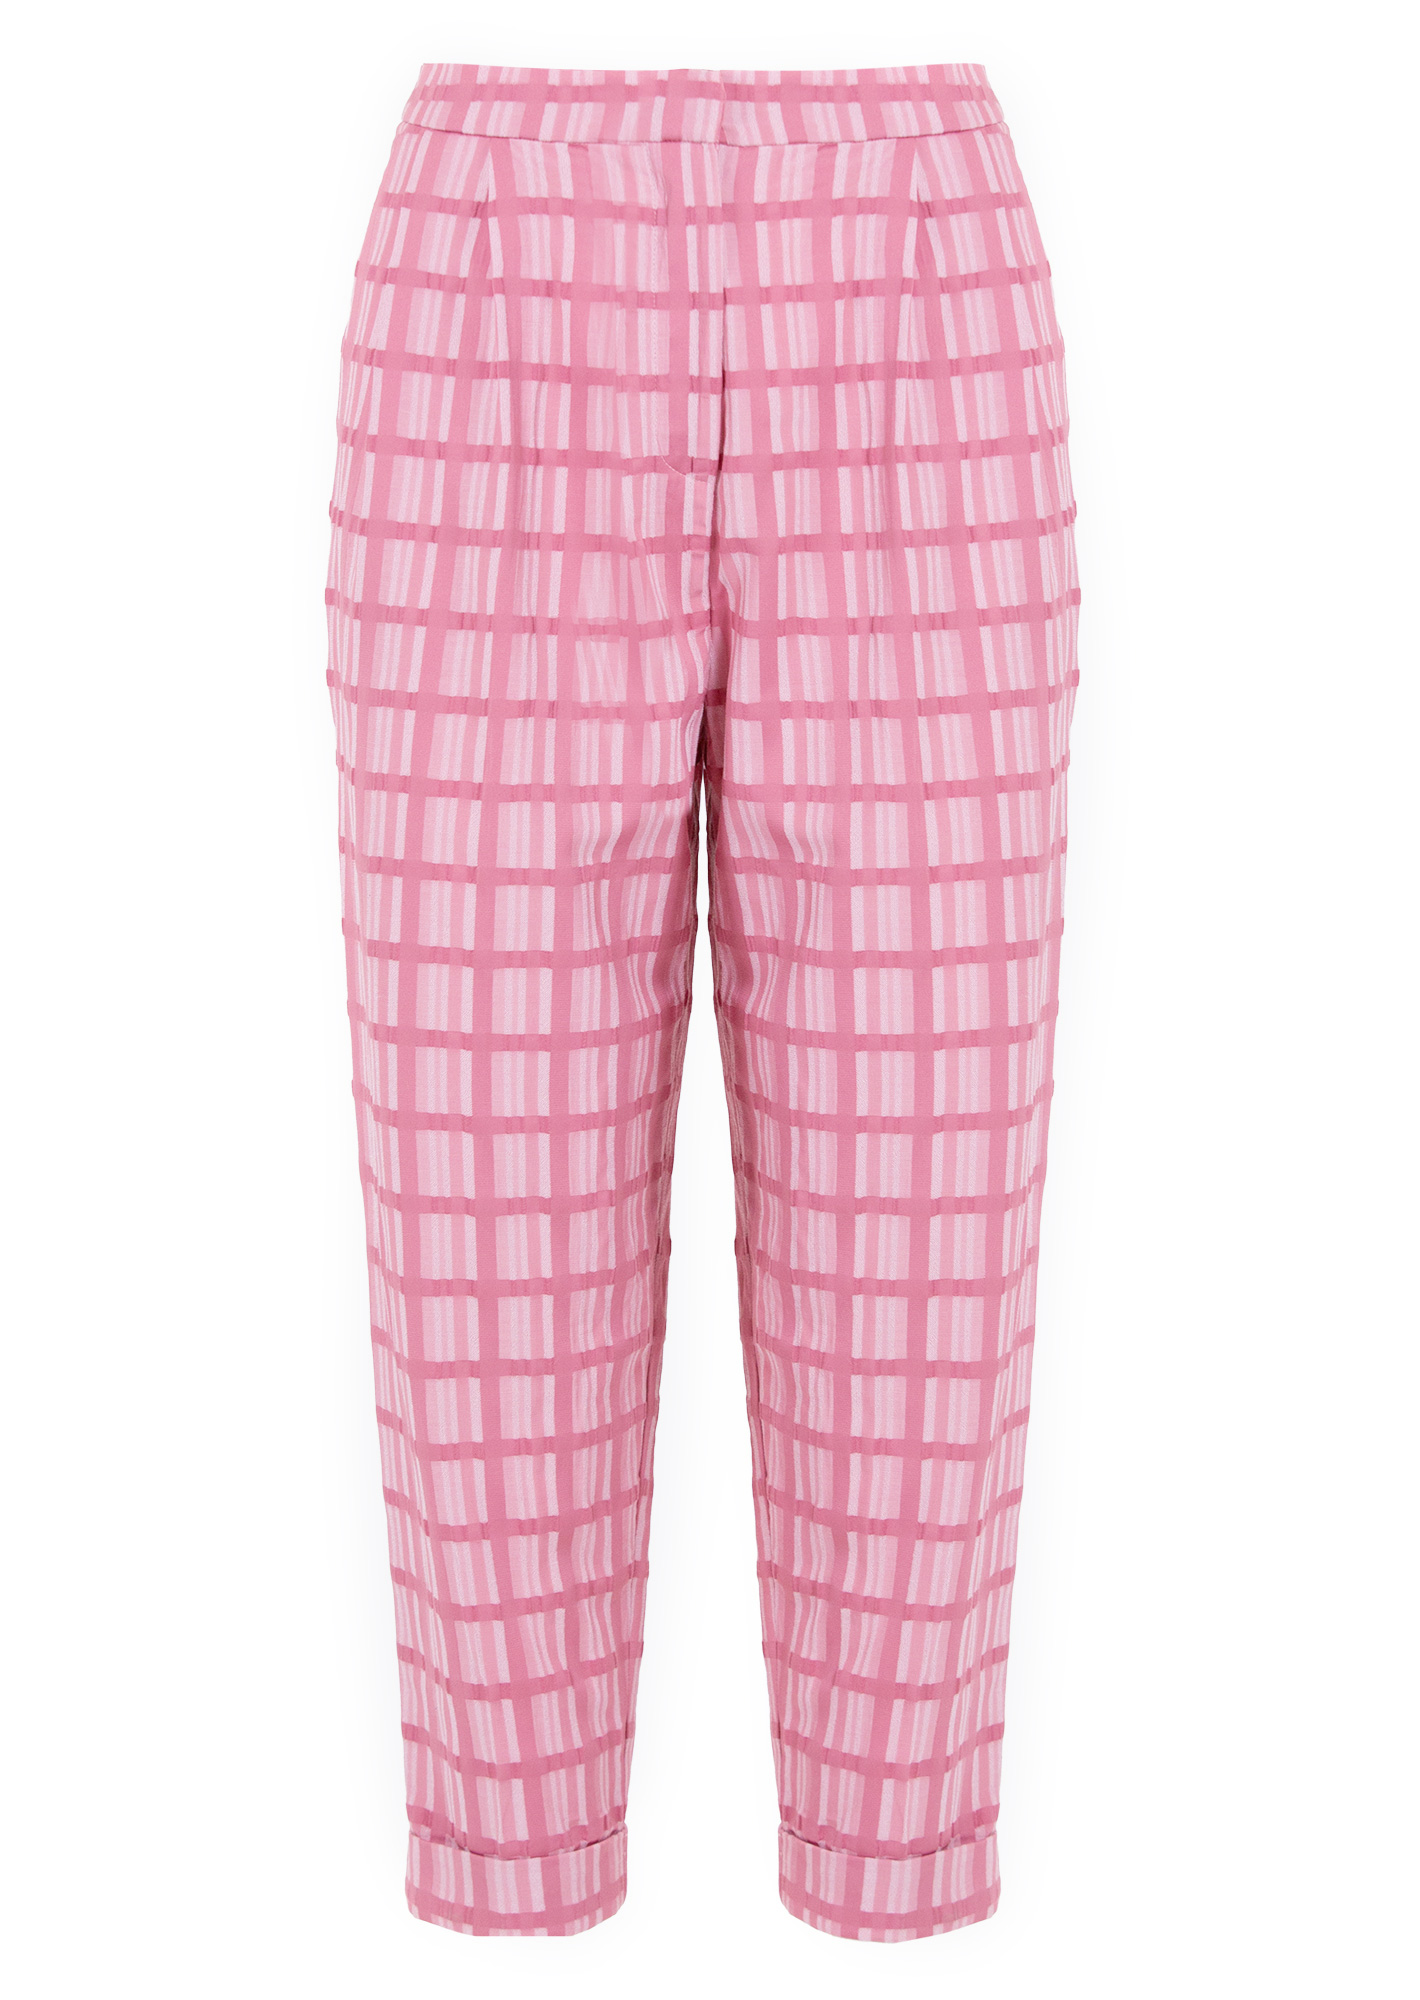 Pink Checked Trouser  Buy Pink Checked Trouser online in India